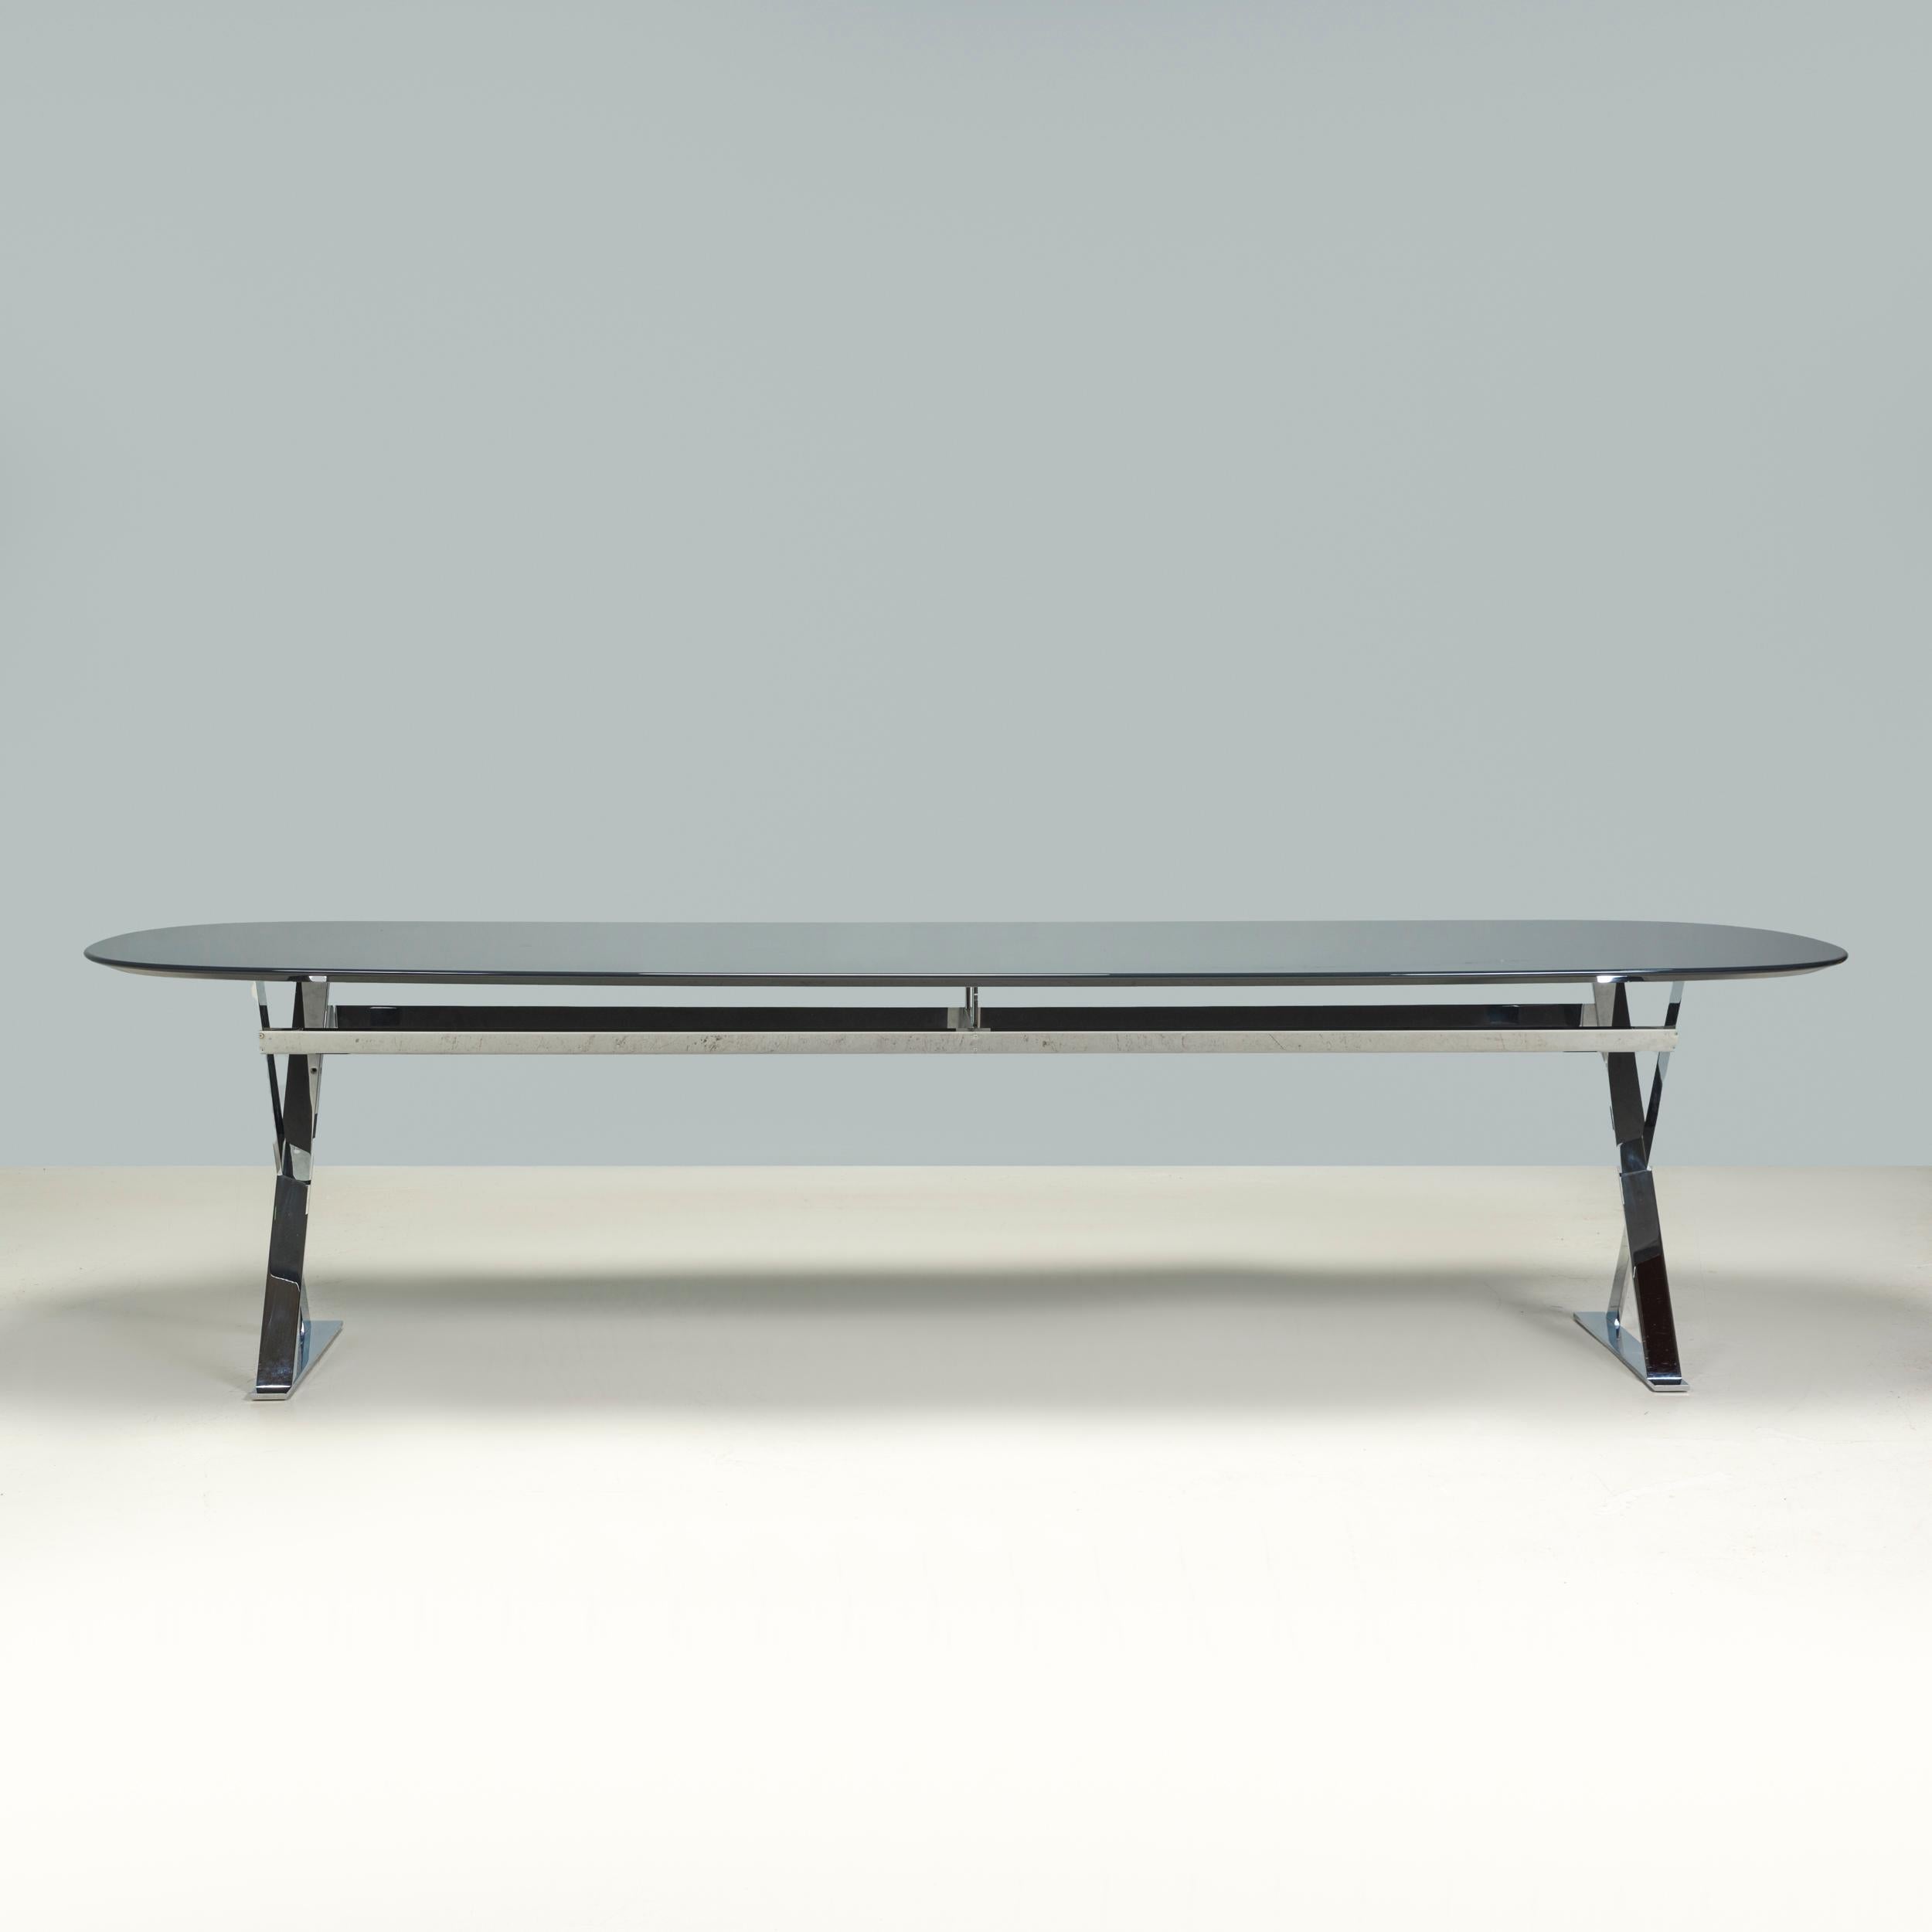 Conçue à l'origine en 2011 par Antonio Citterio pour Maxalto, la table à manger Pathos est un fantastique exemple de design italien moderne.

Constituée d'un piétement en croix chromé brillant, la table est dotée d'un plateau de forme elliptique en